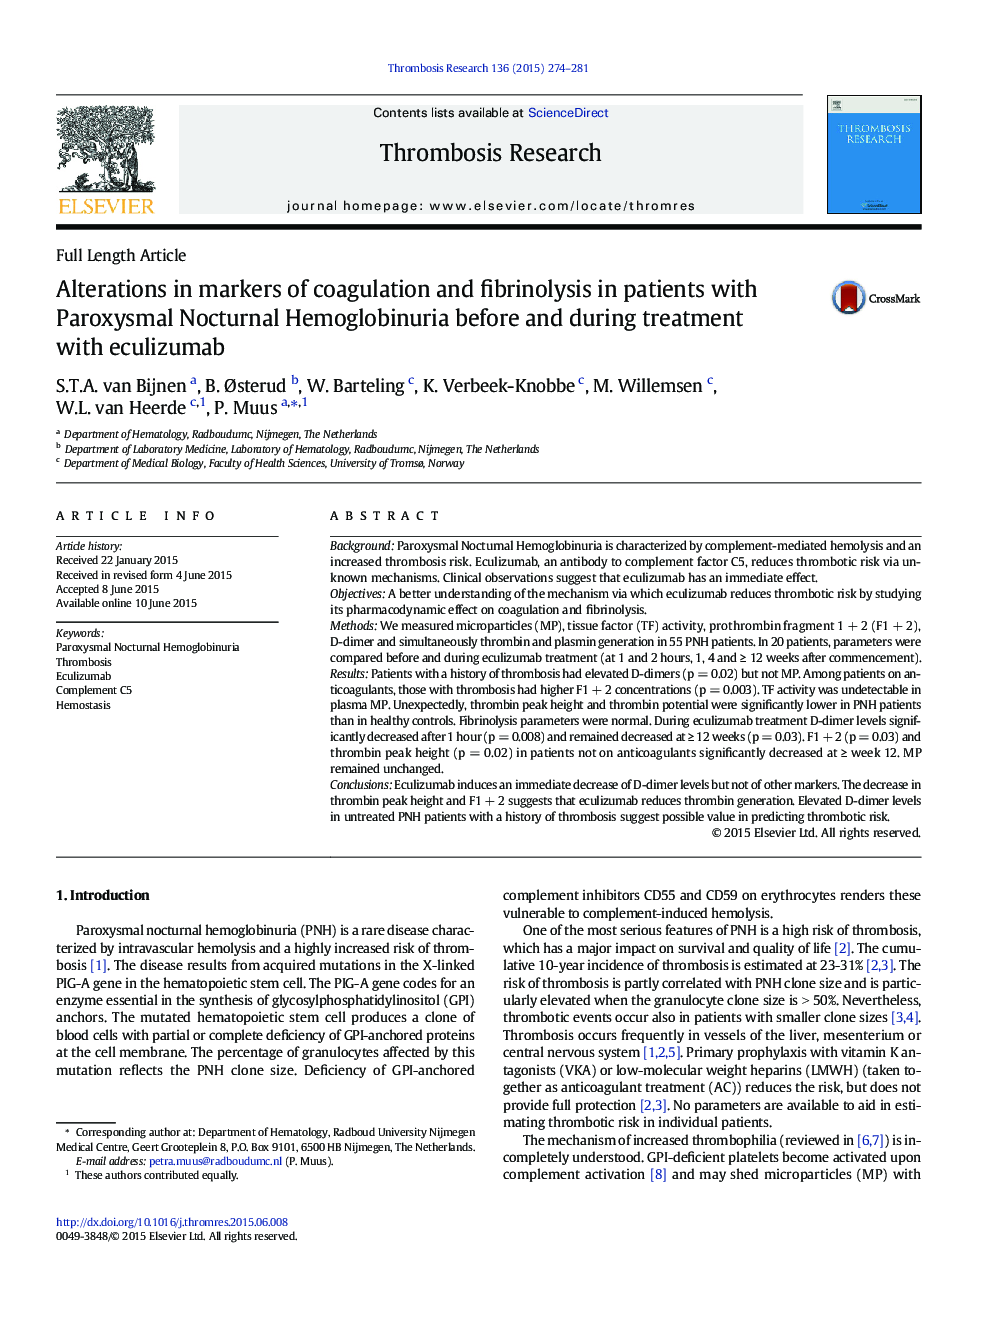 تغییرات در نشانگرهای انعقاد و فیبرینولیز در بیماران مبتلا به هموگلوبینوری پاروکسیسمال شبانه قبل و در طی درمان با اکولیزومب 